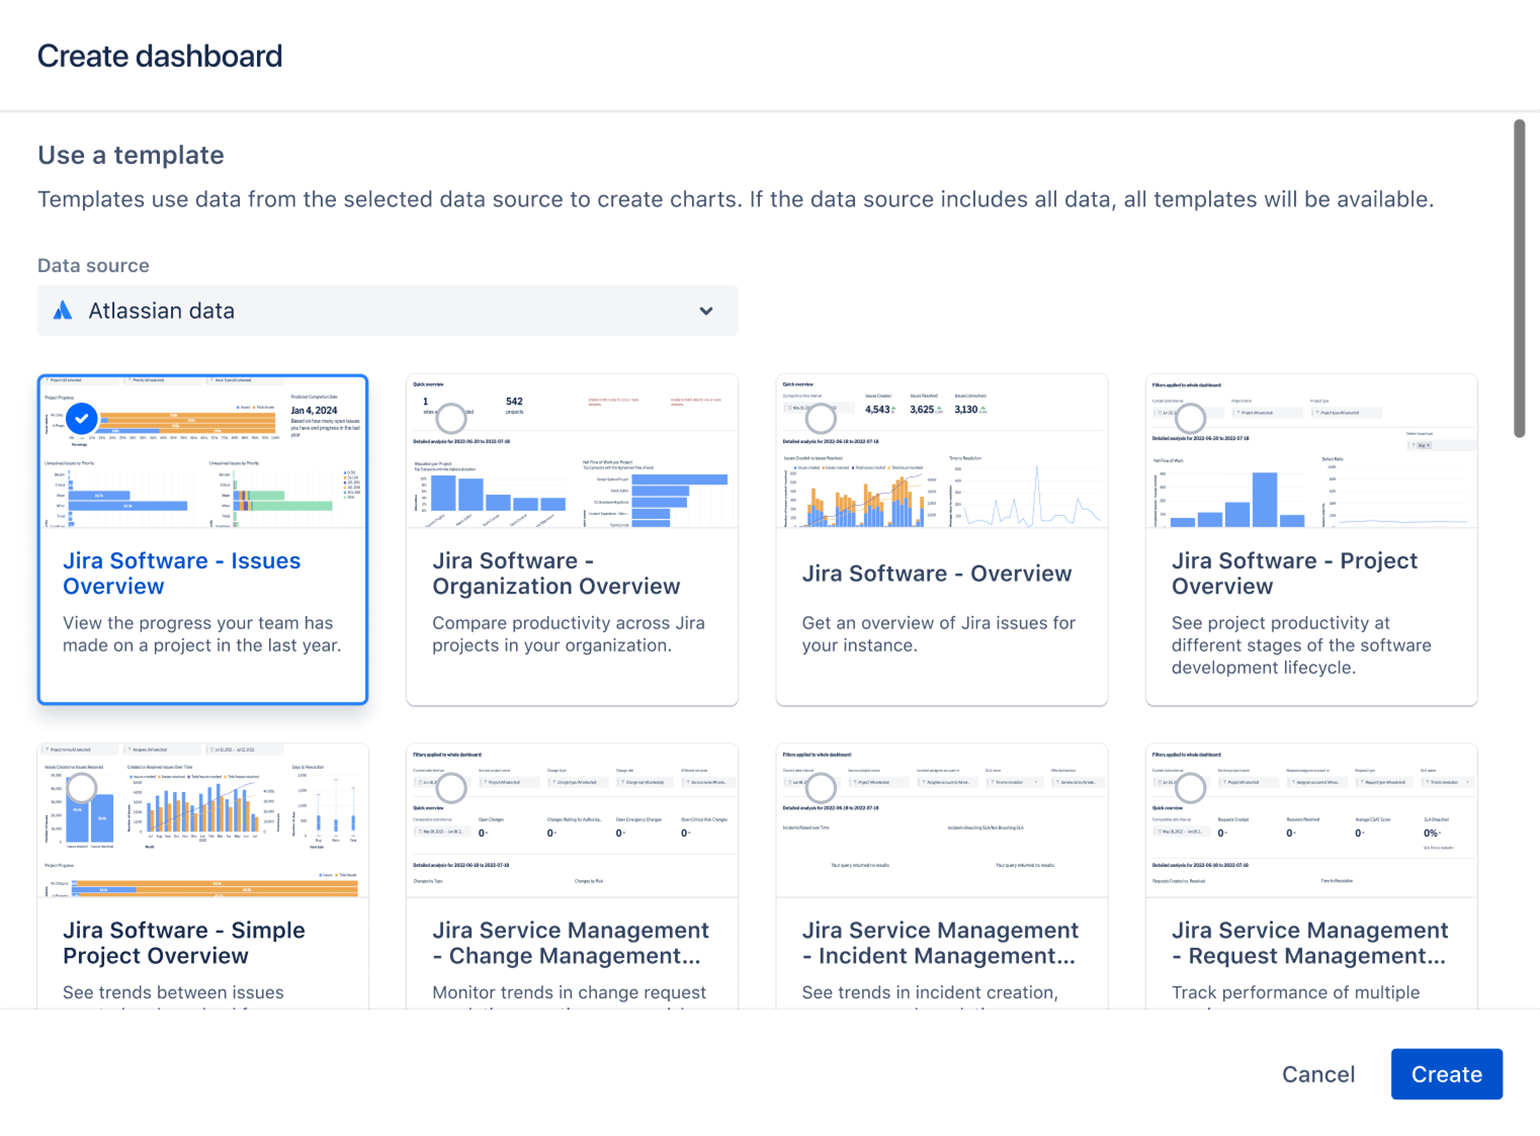 Un écran de sélection présente des exemples de modèles que vous pouvez utiliser pour obtenir des données à partir de produits Atlassian lorsque vous utilisez Atlassian Analytics.